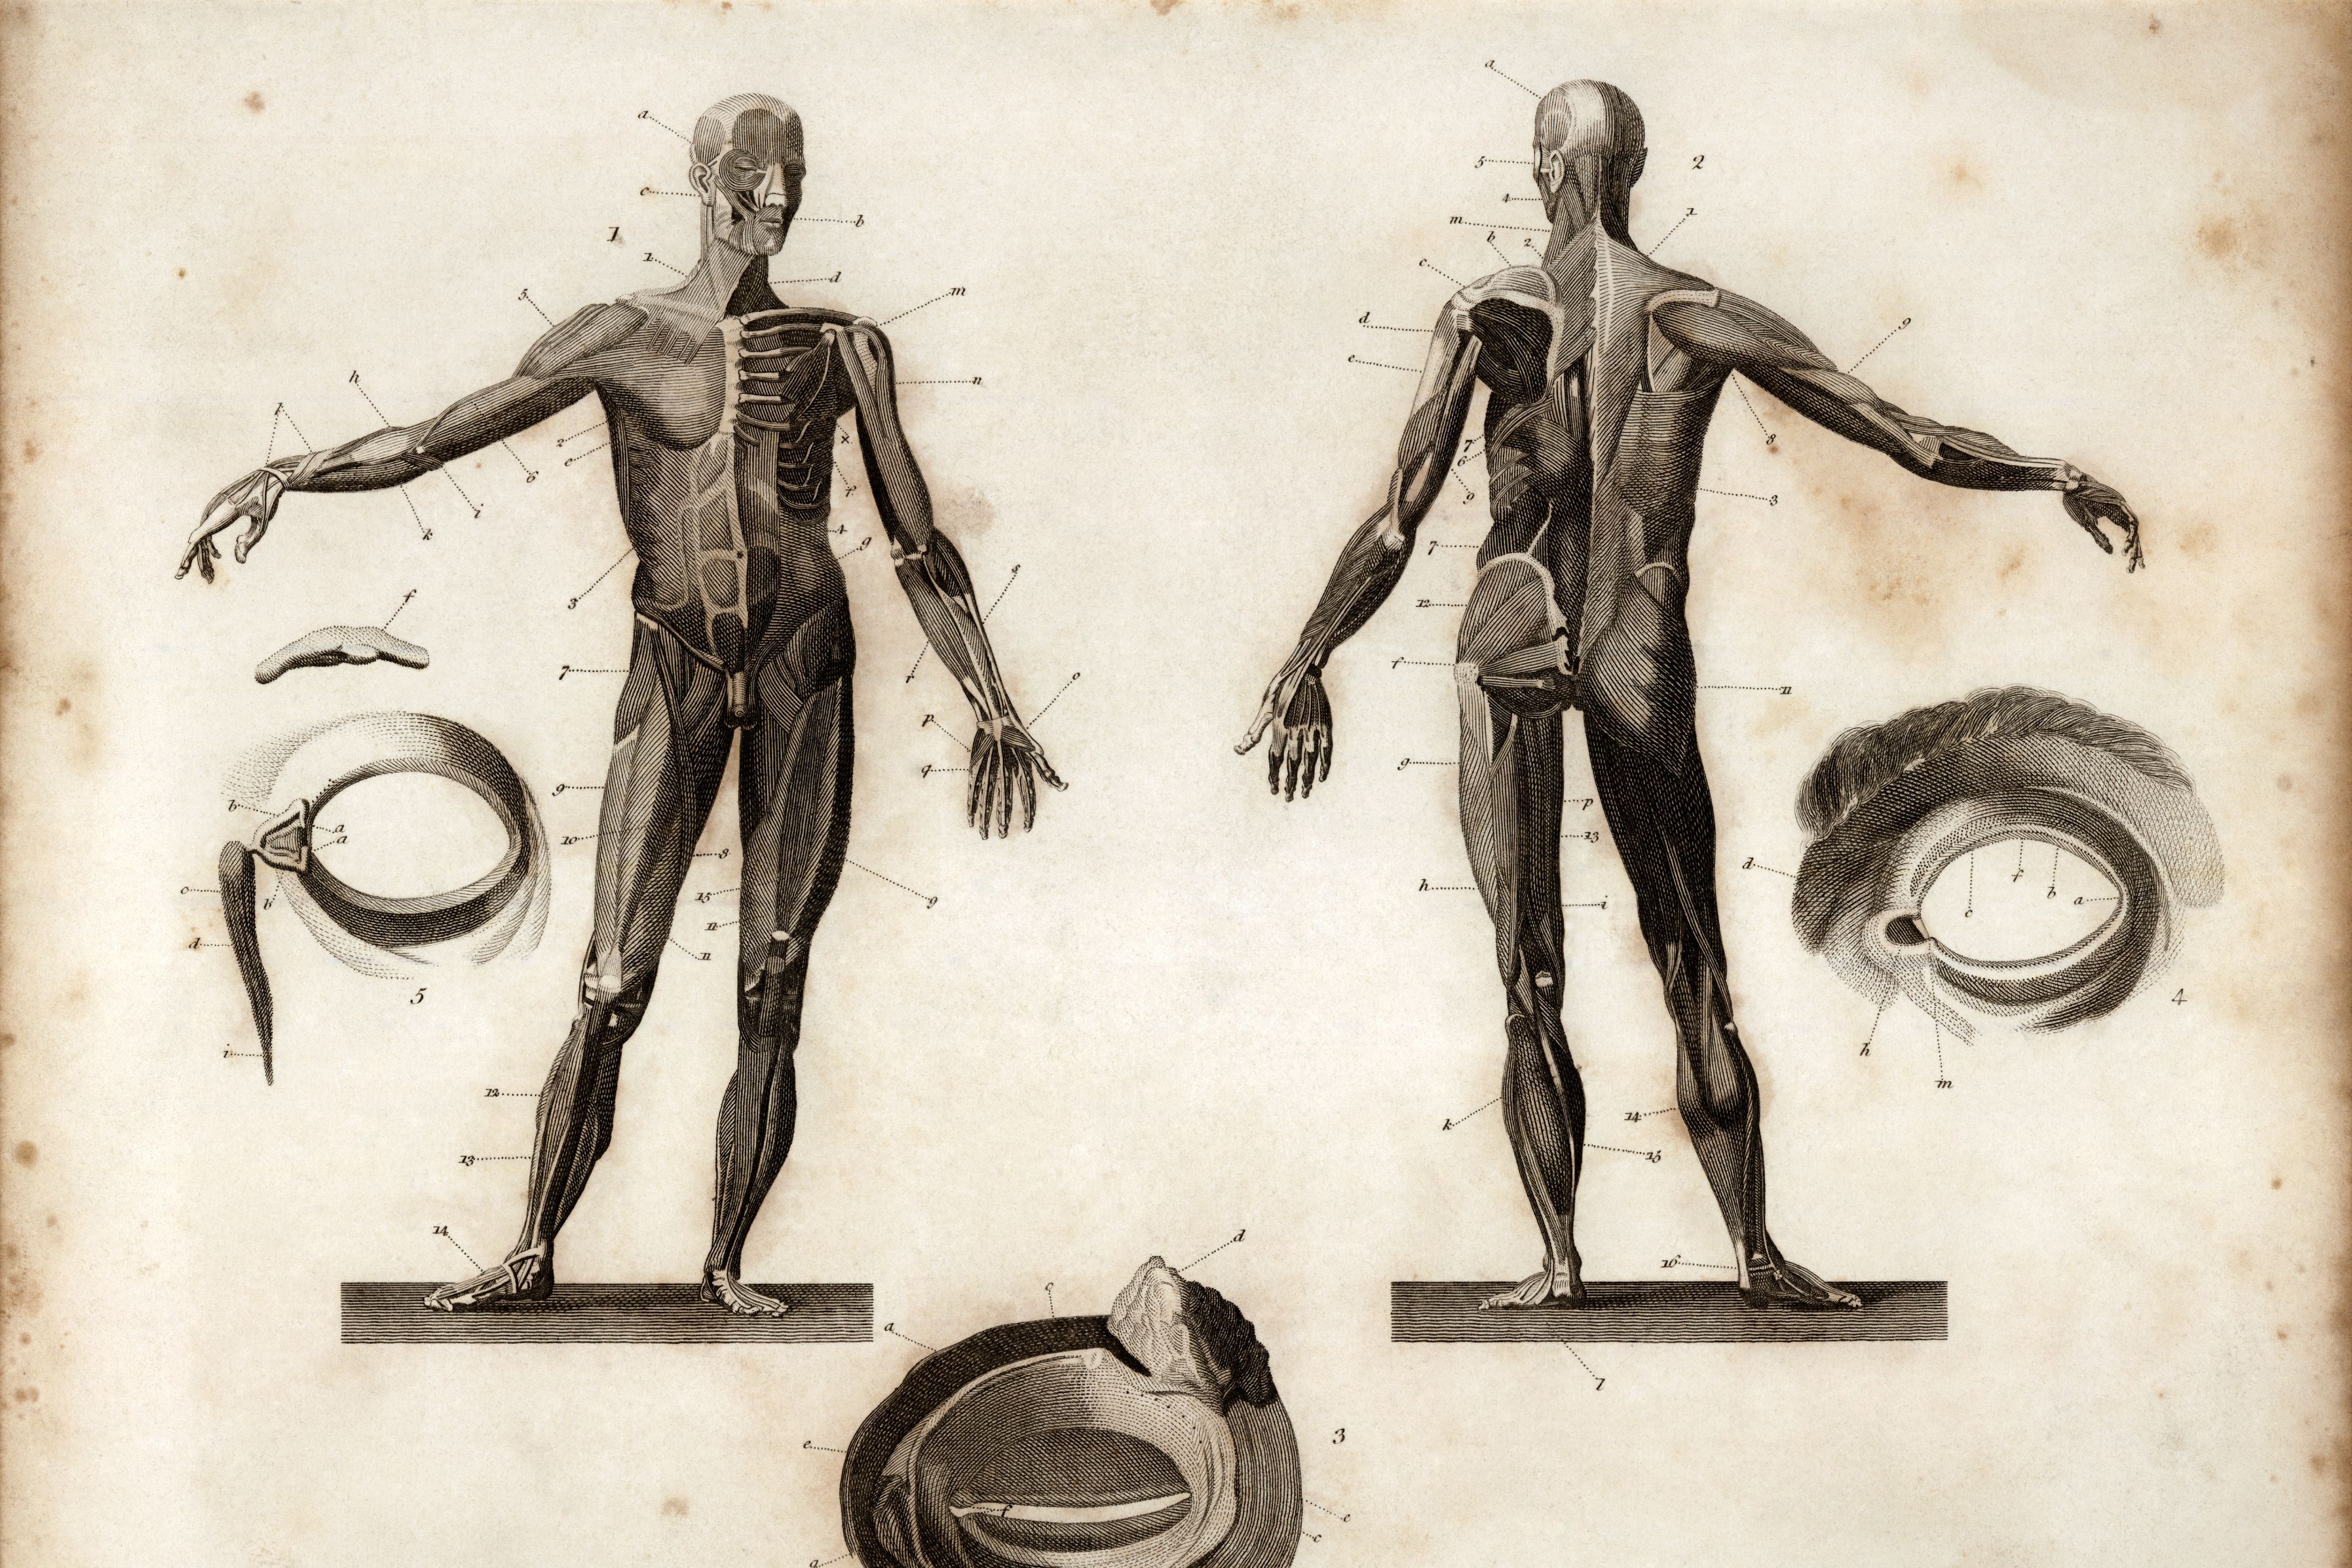 Gravure met afbeelding van de frontale en posterieure anatomie van een mens